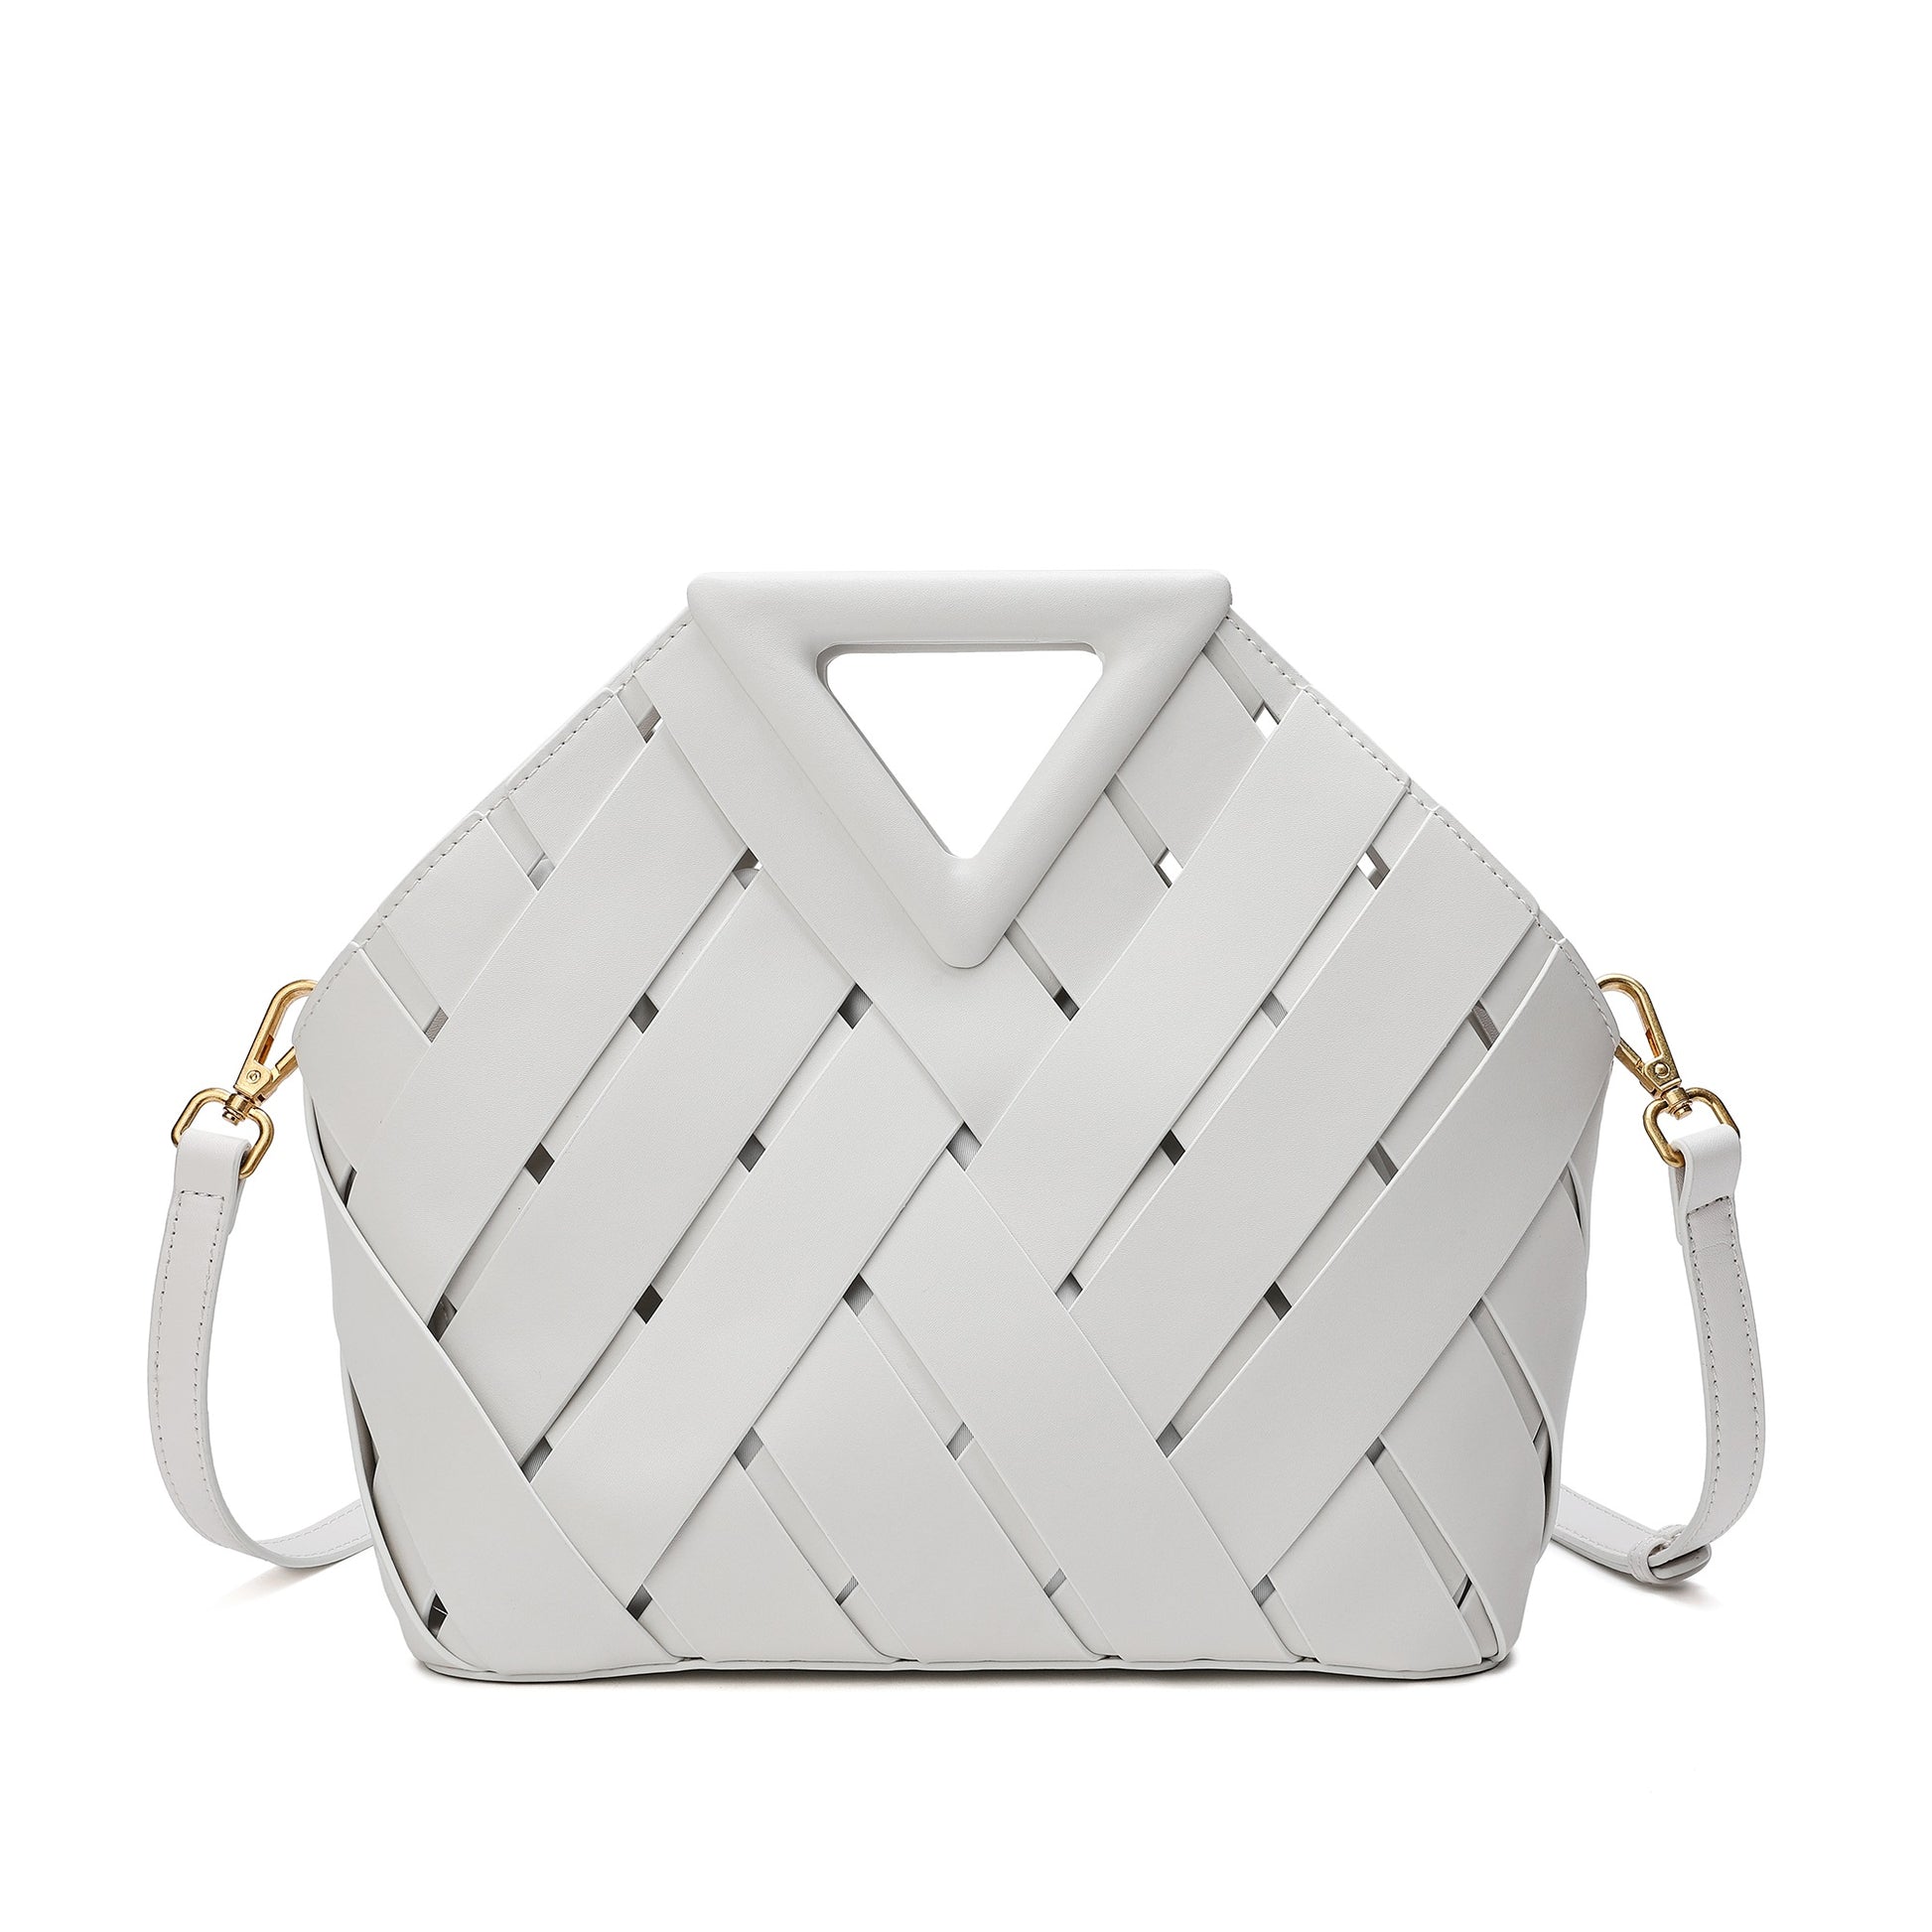 Tiffany Checkered Doorbuster Handbag